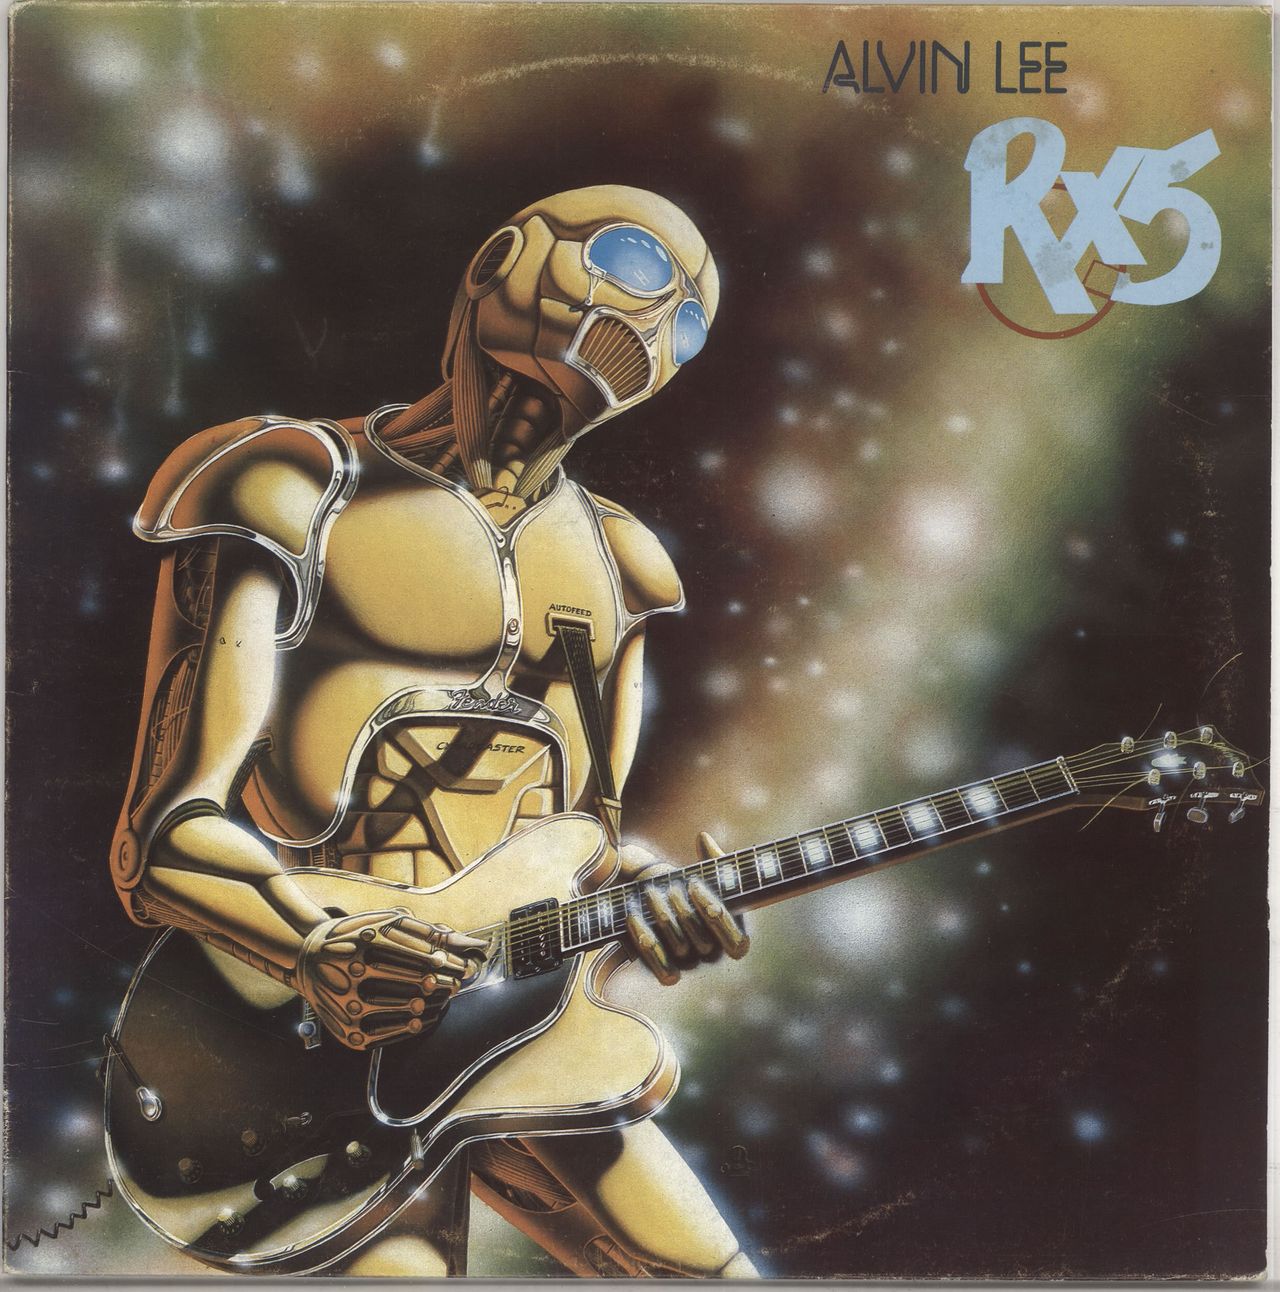 Alvin Lee RX5 Italian vinyl LP album (LP record) AALP5006